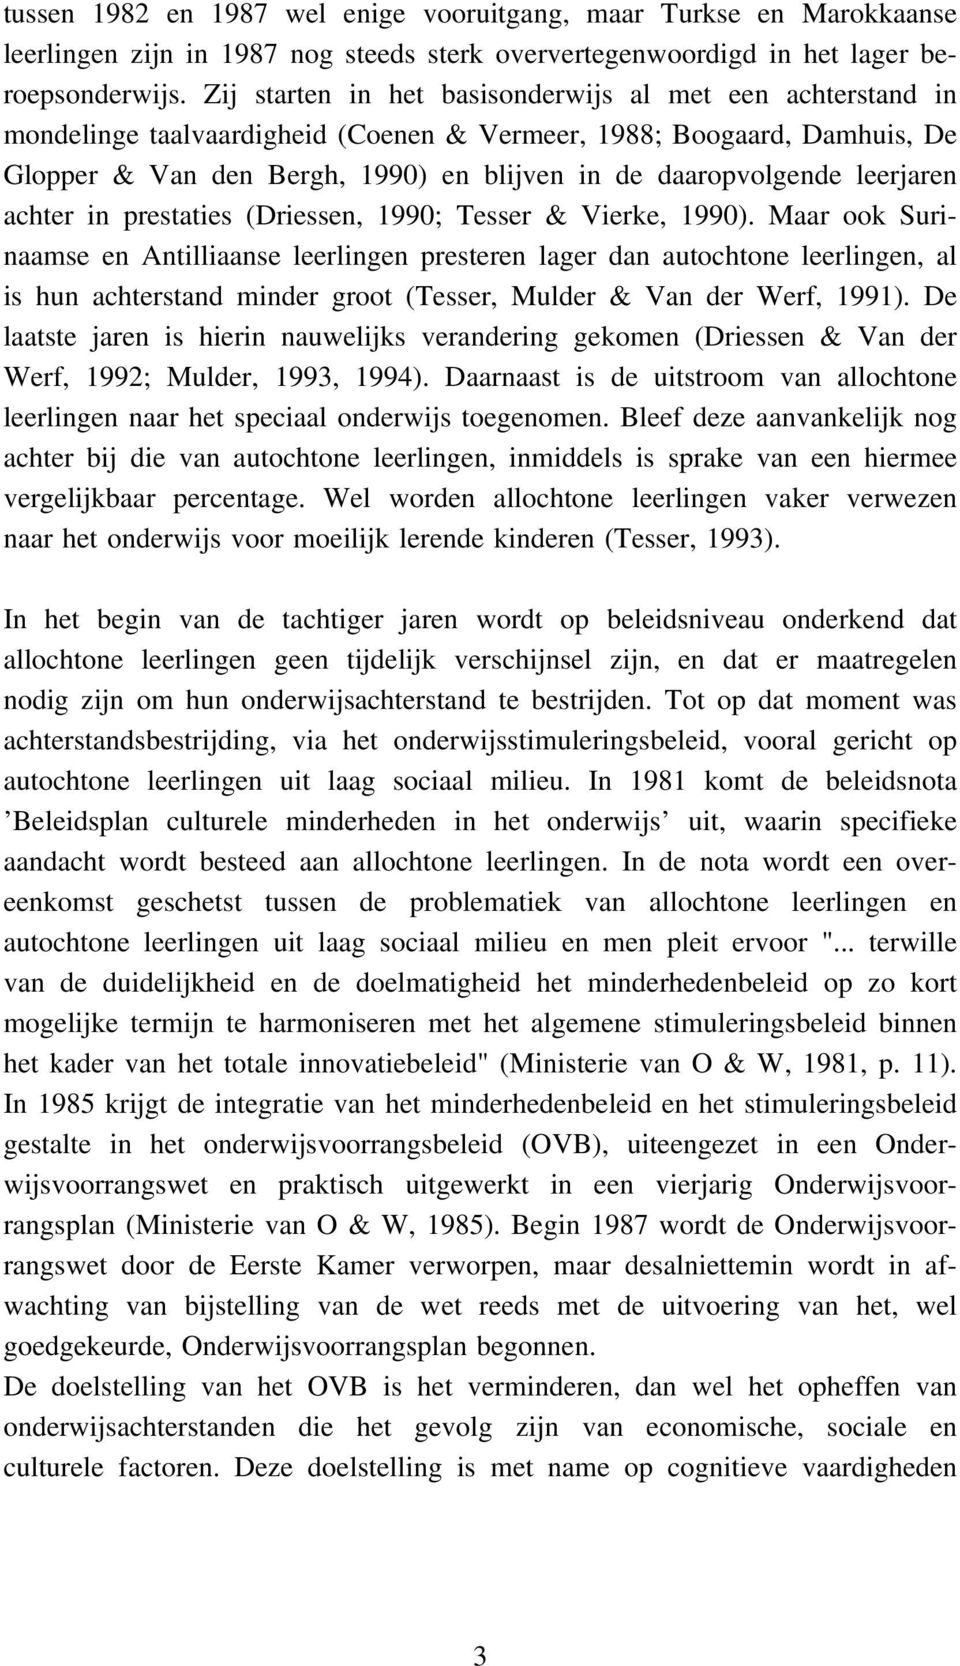 leerjaren achter in prestaties (Driessen, 1990; Tesser & Vierke, 1990).